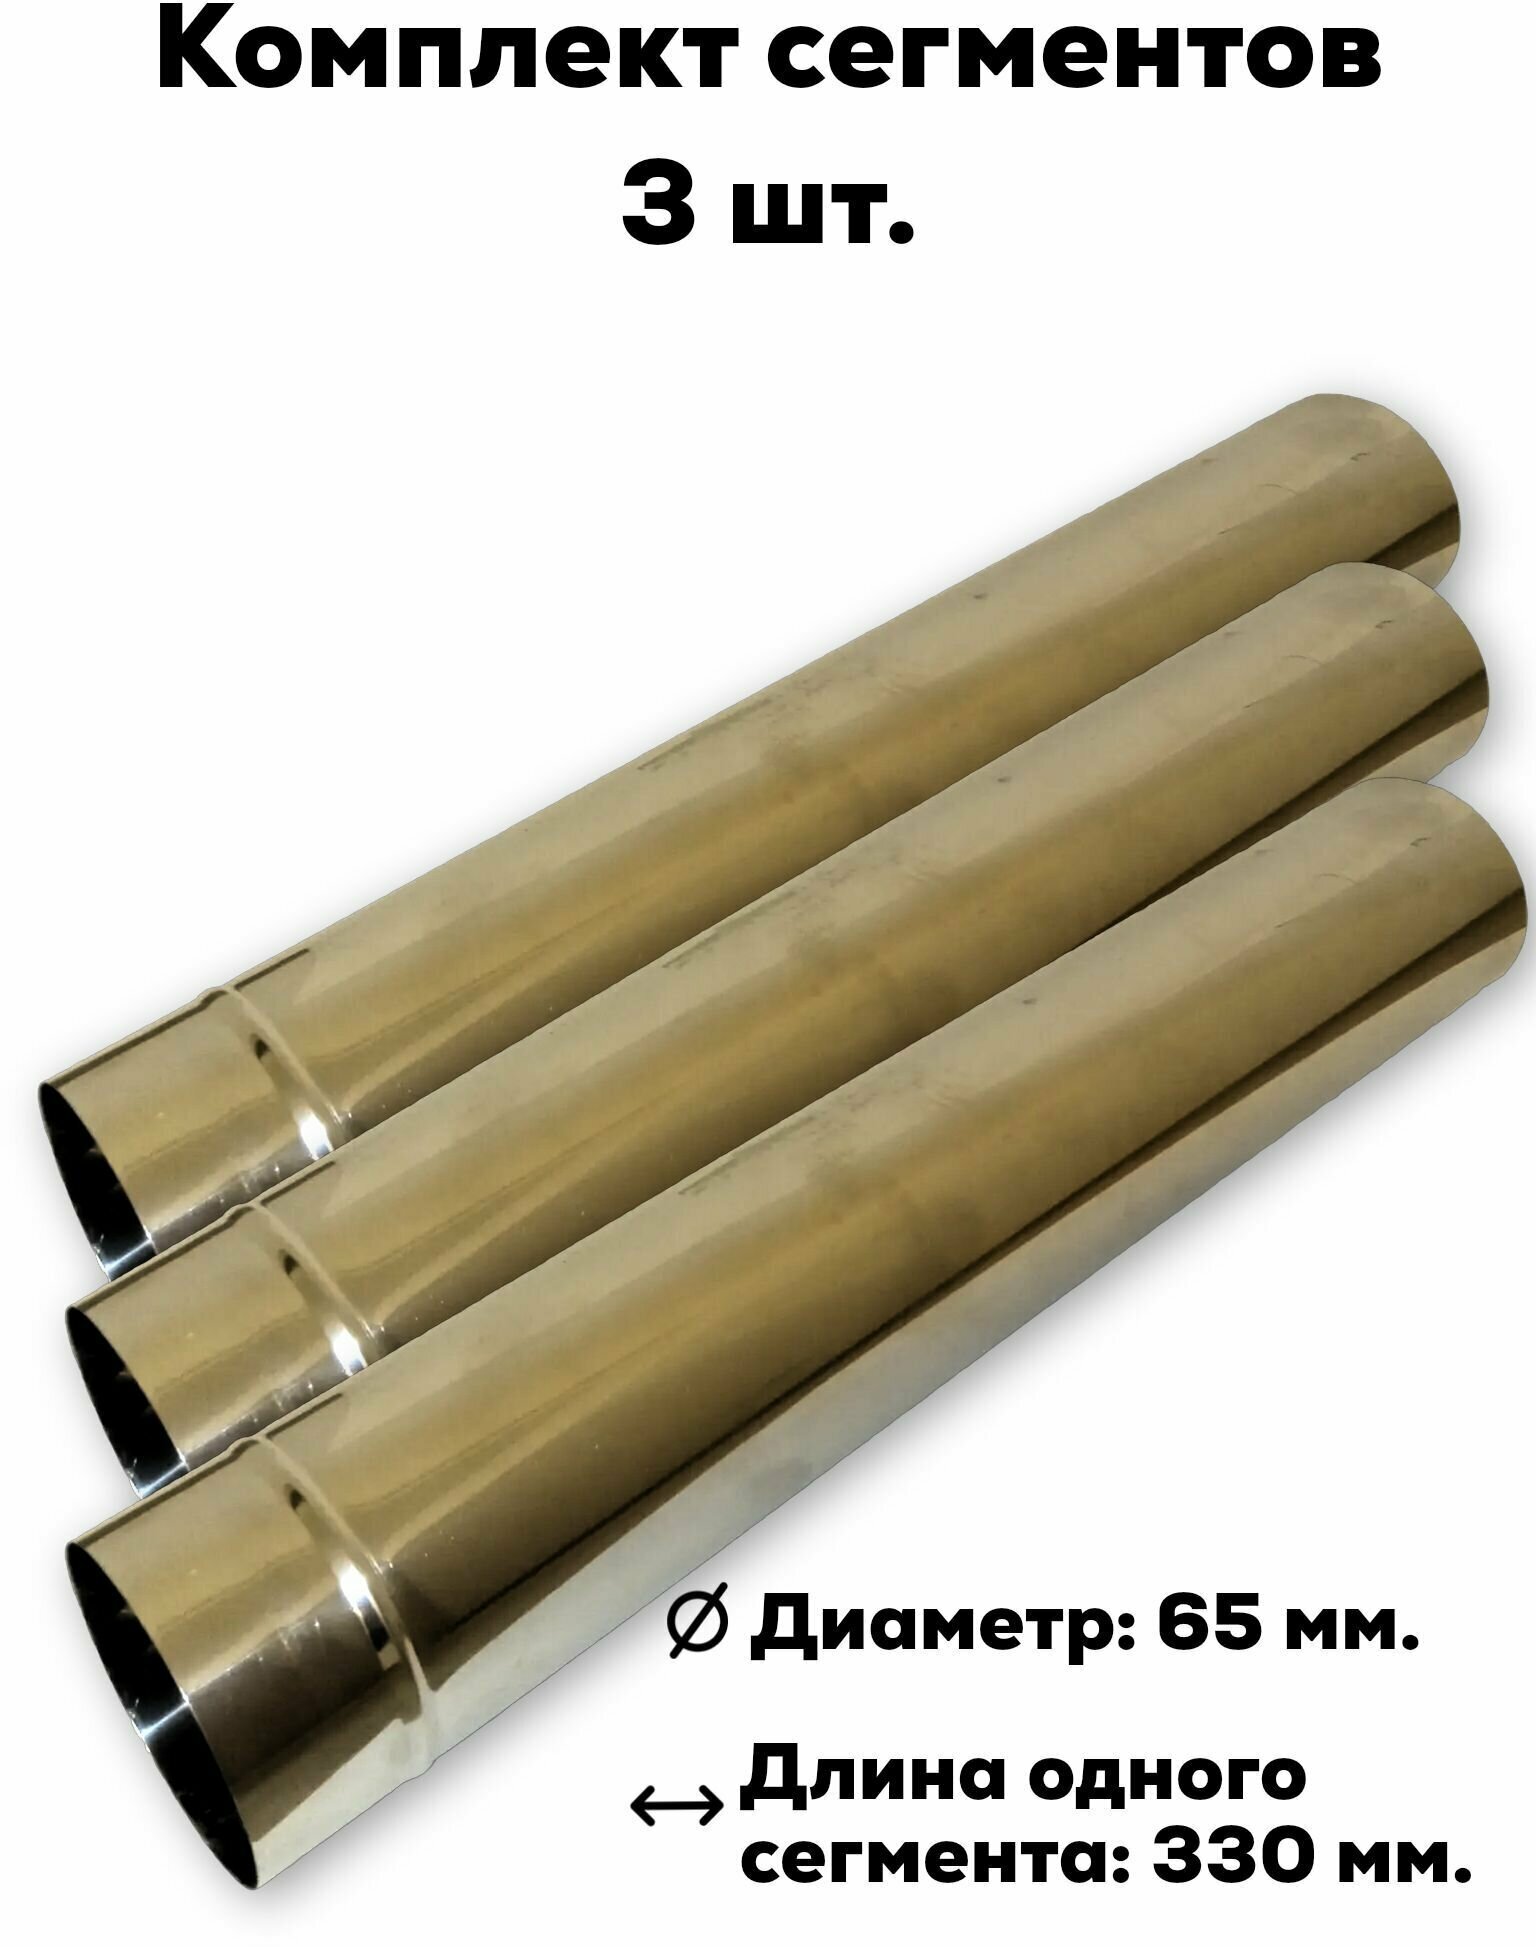 Комплект сегментов дымохода Пошехонка 65 мм. - 3 шт